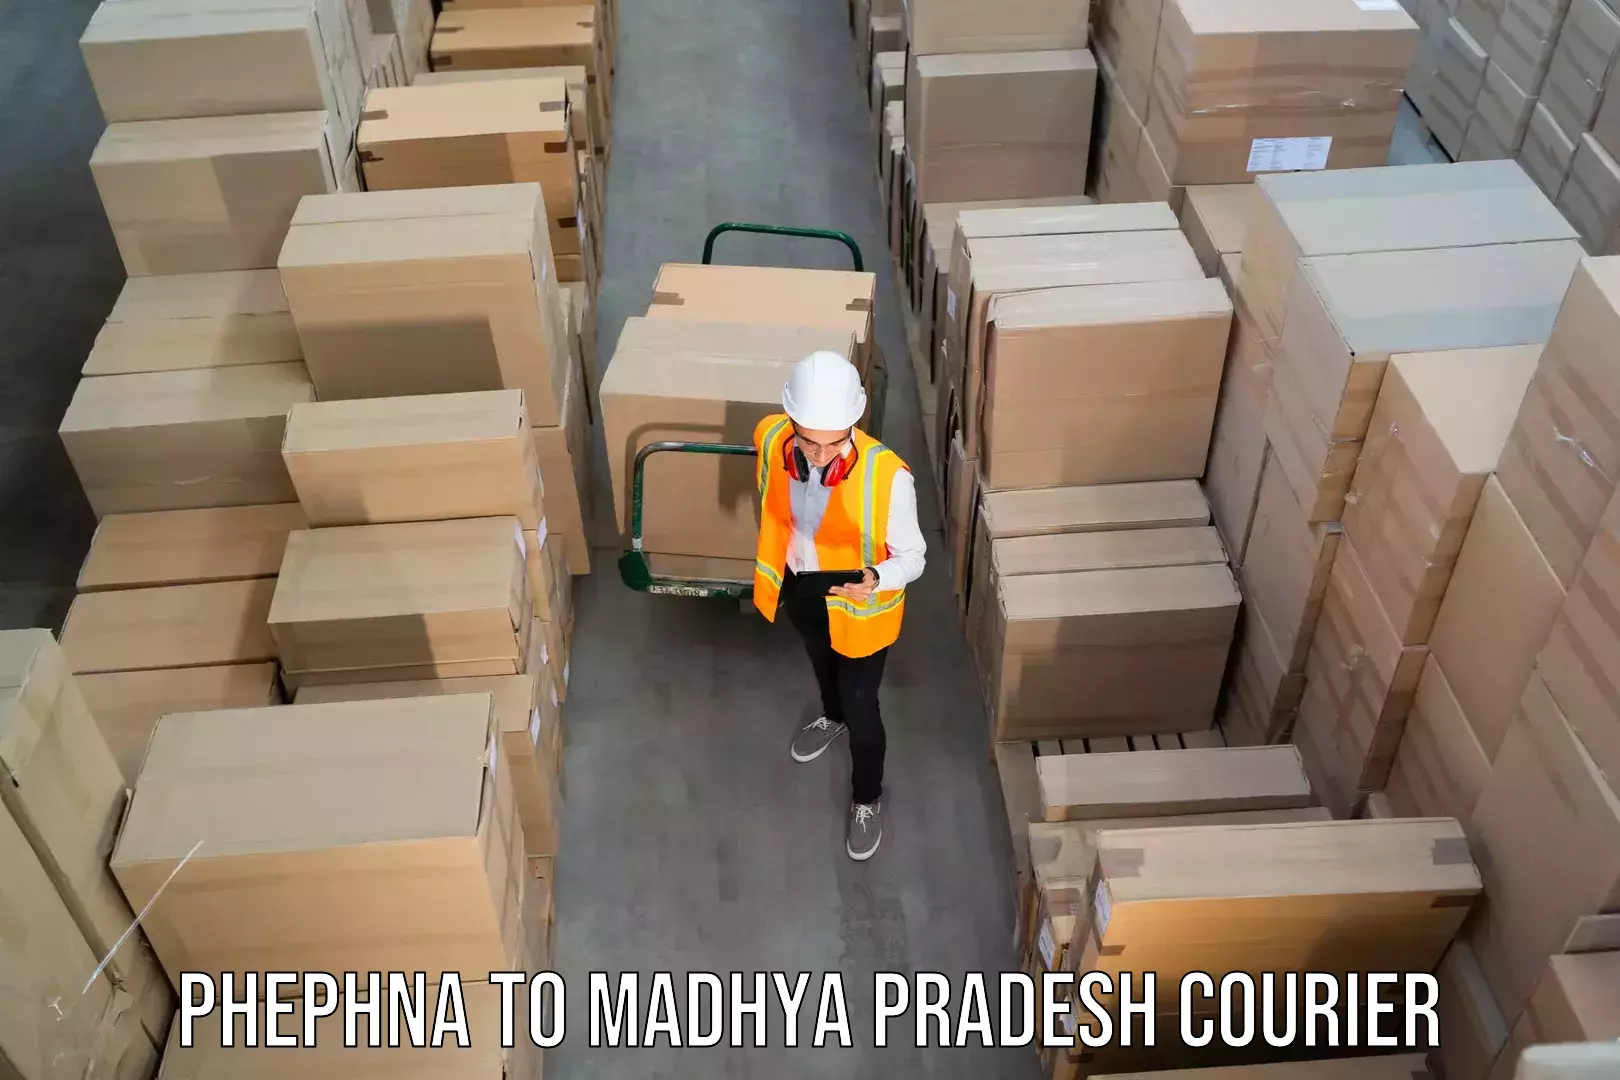 Regular parcel service Phephna to Berasia